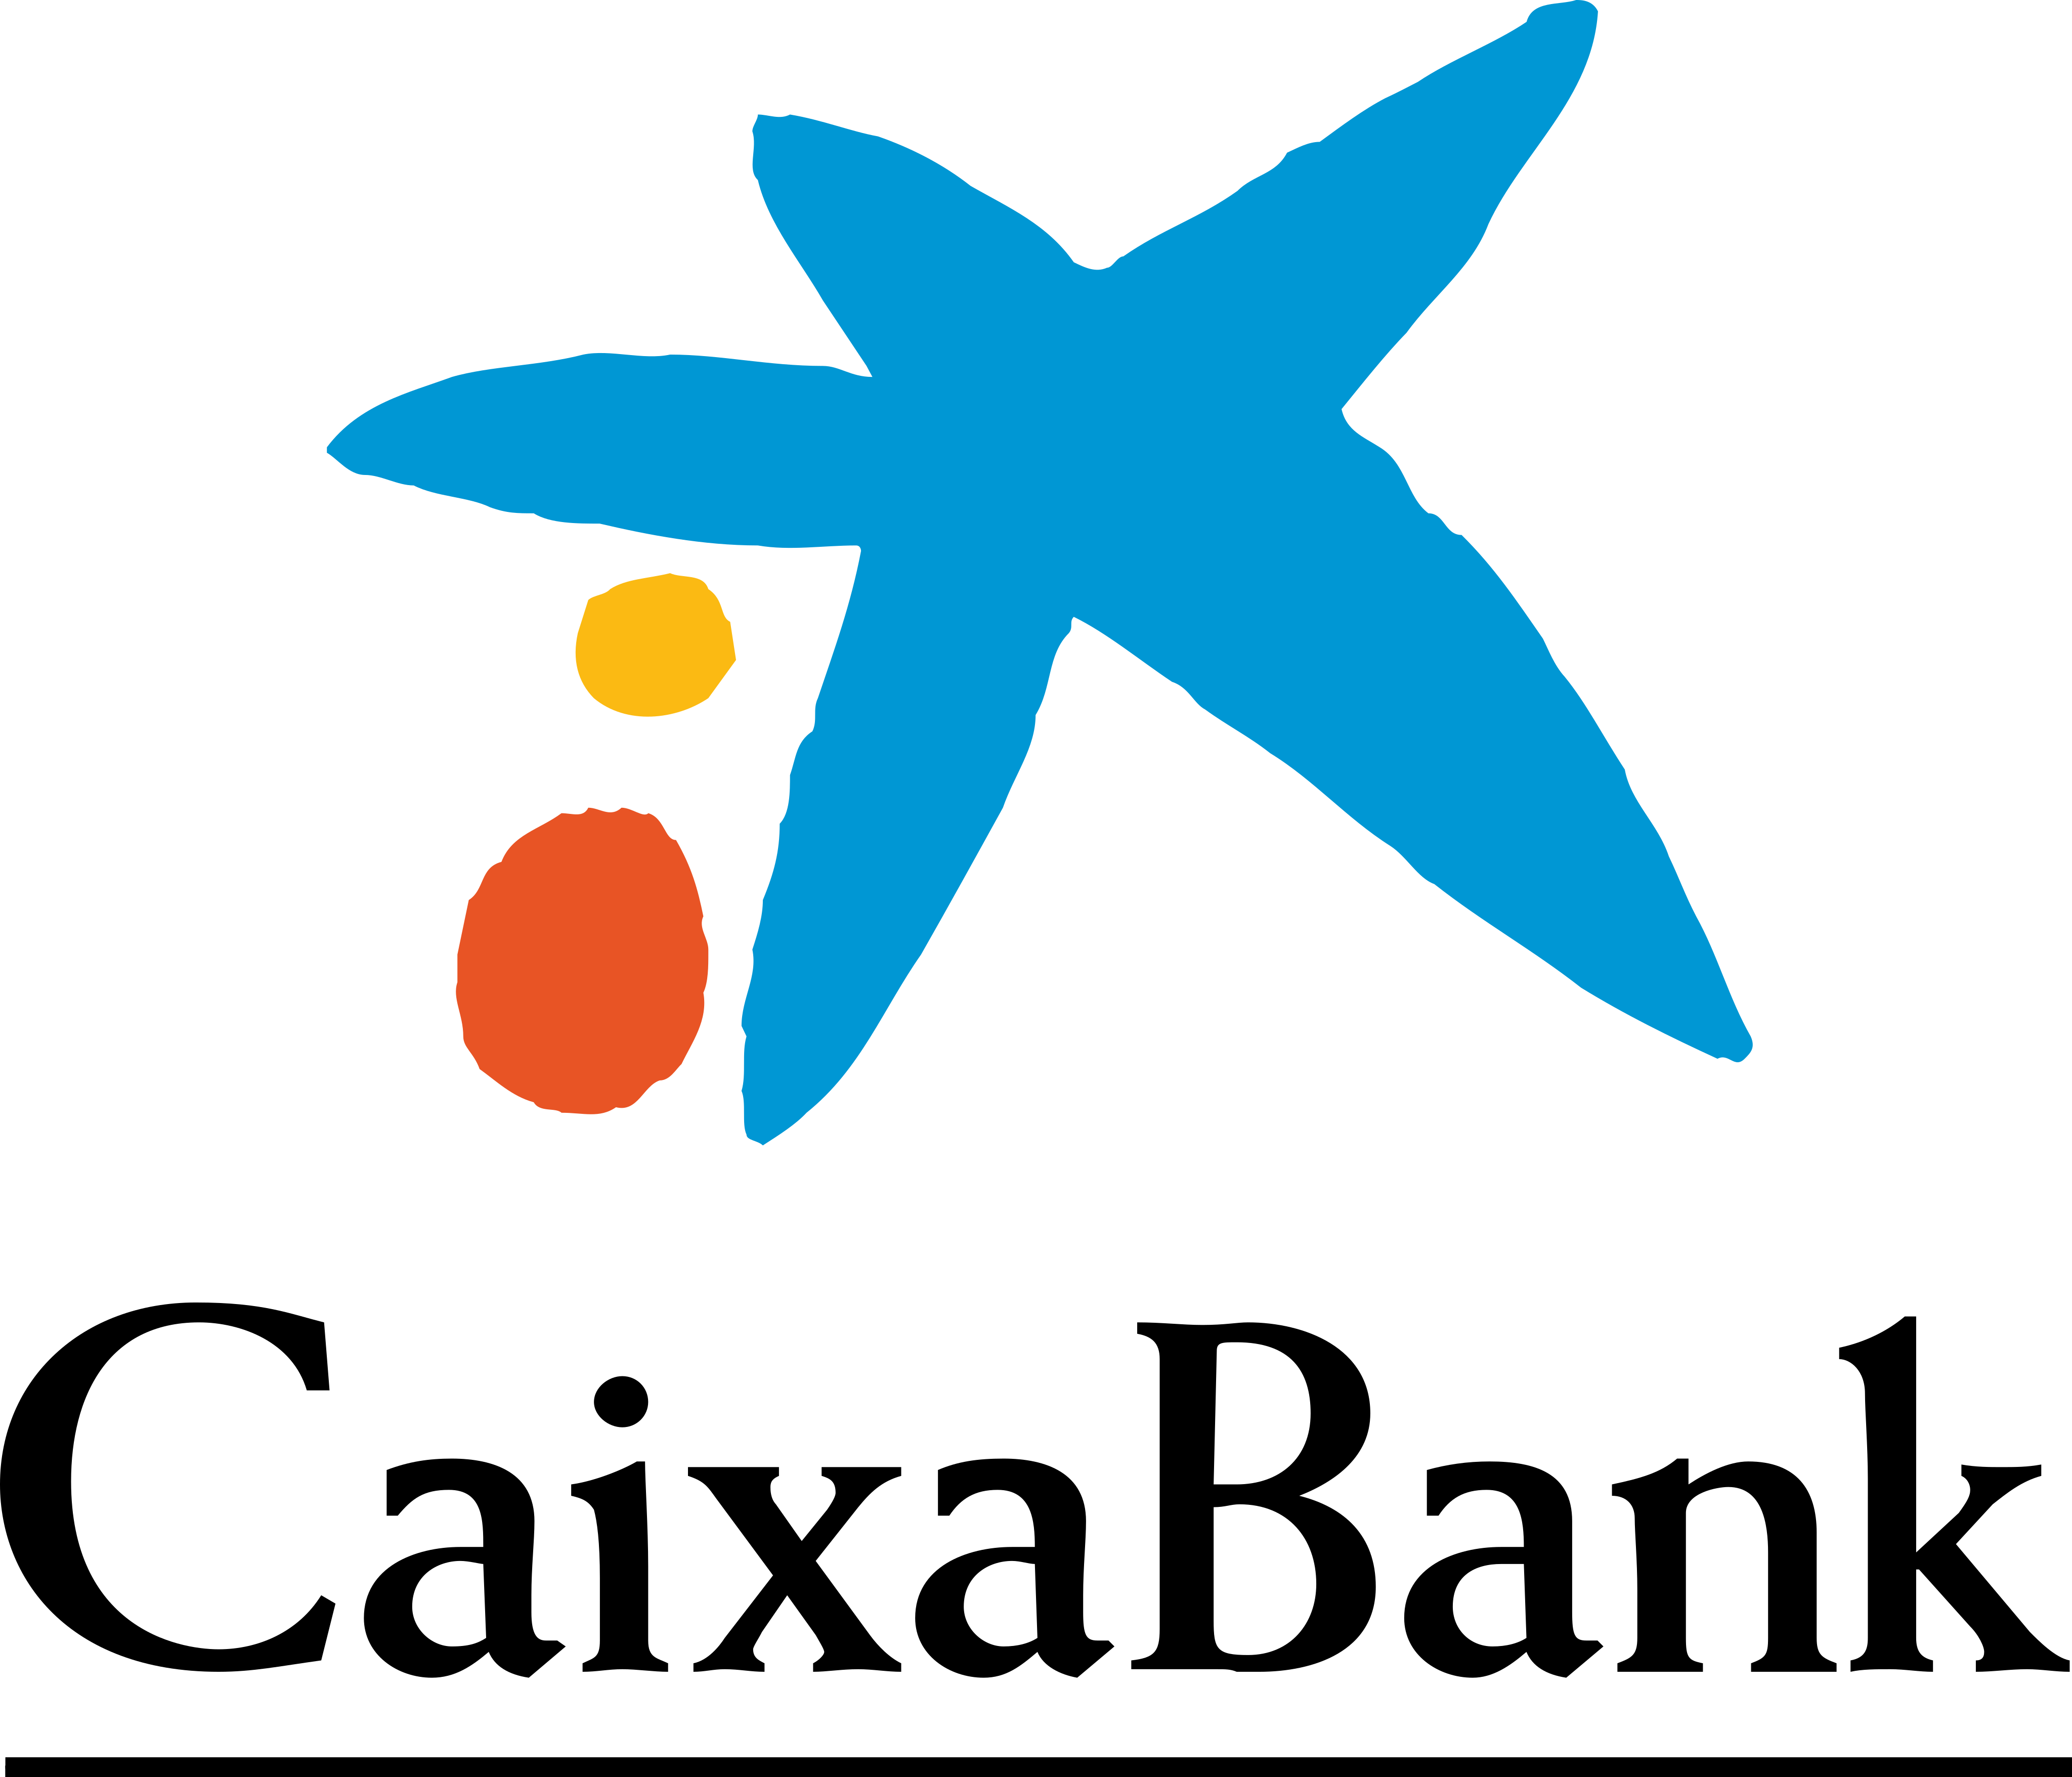 la caixa bank logo 1 - La Caixa Bank Logo